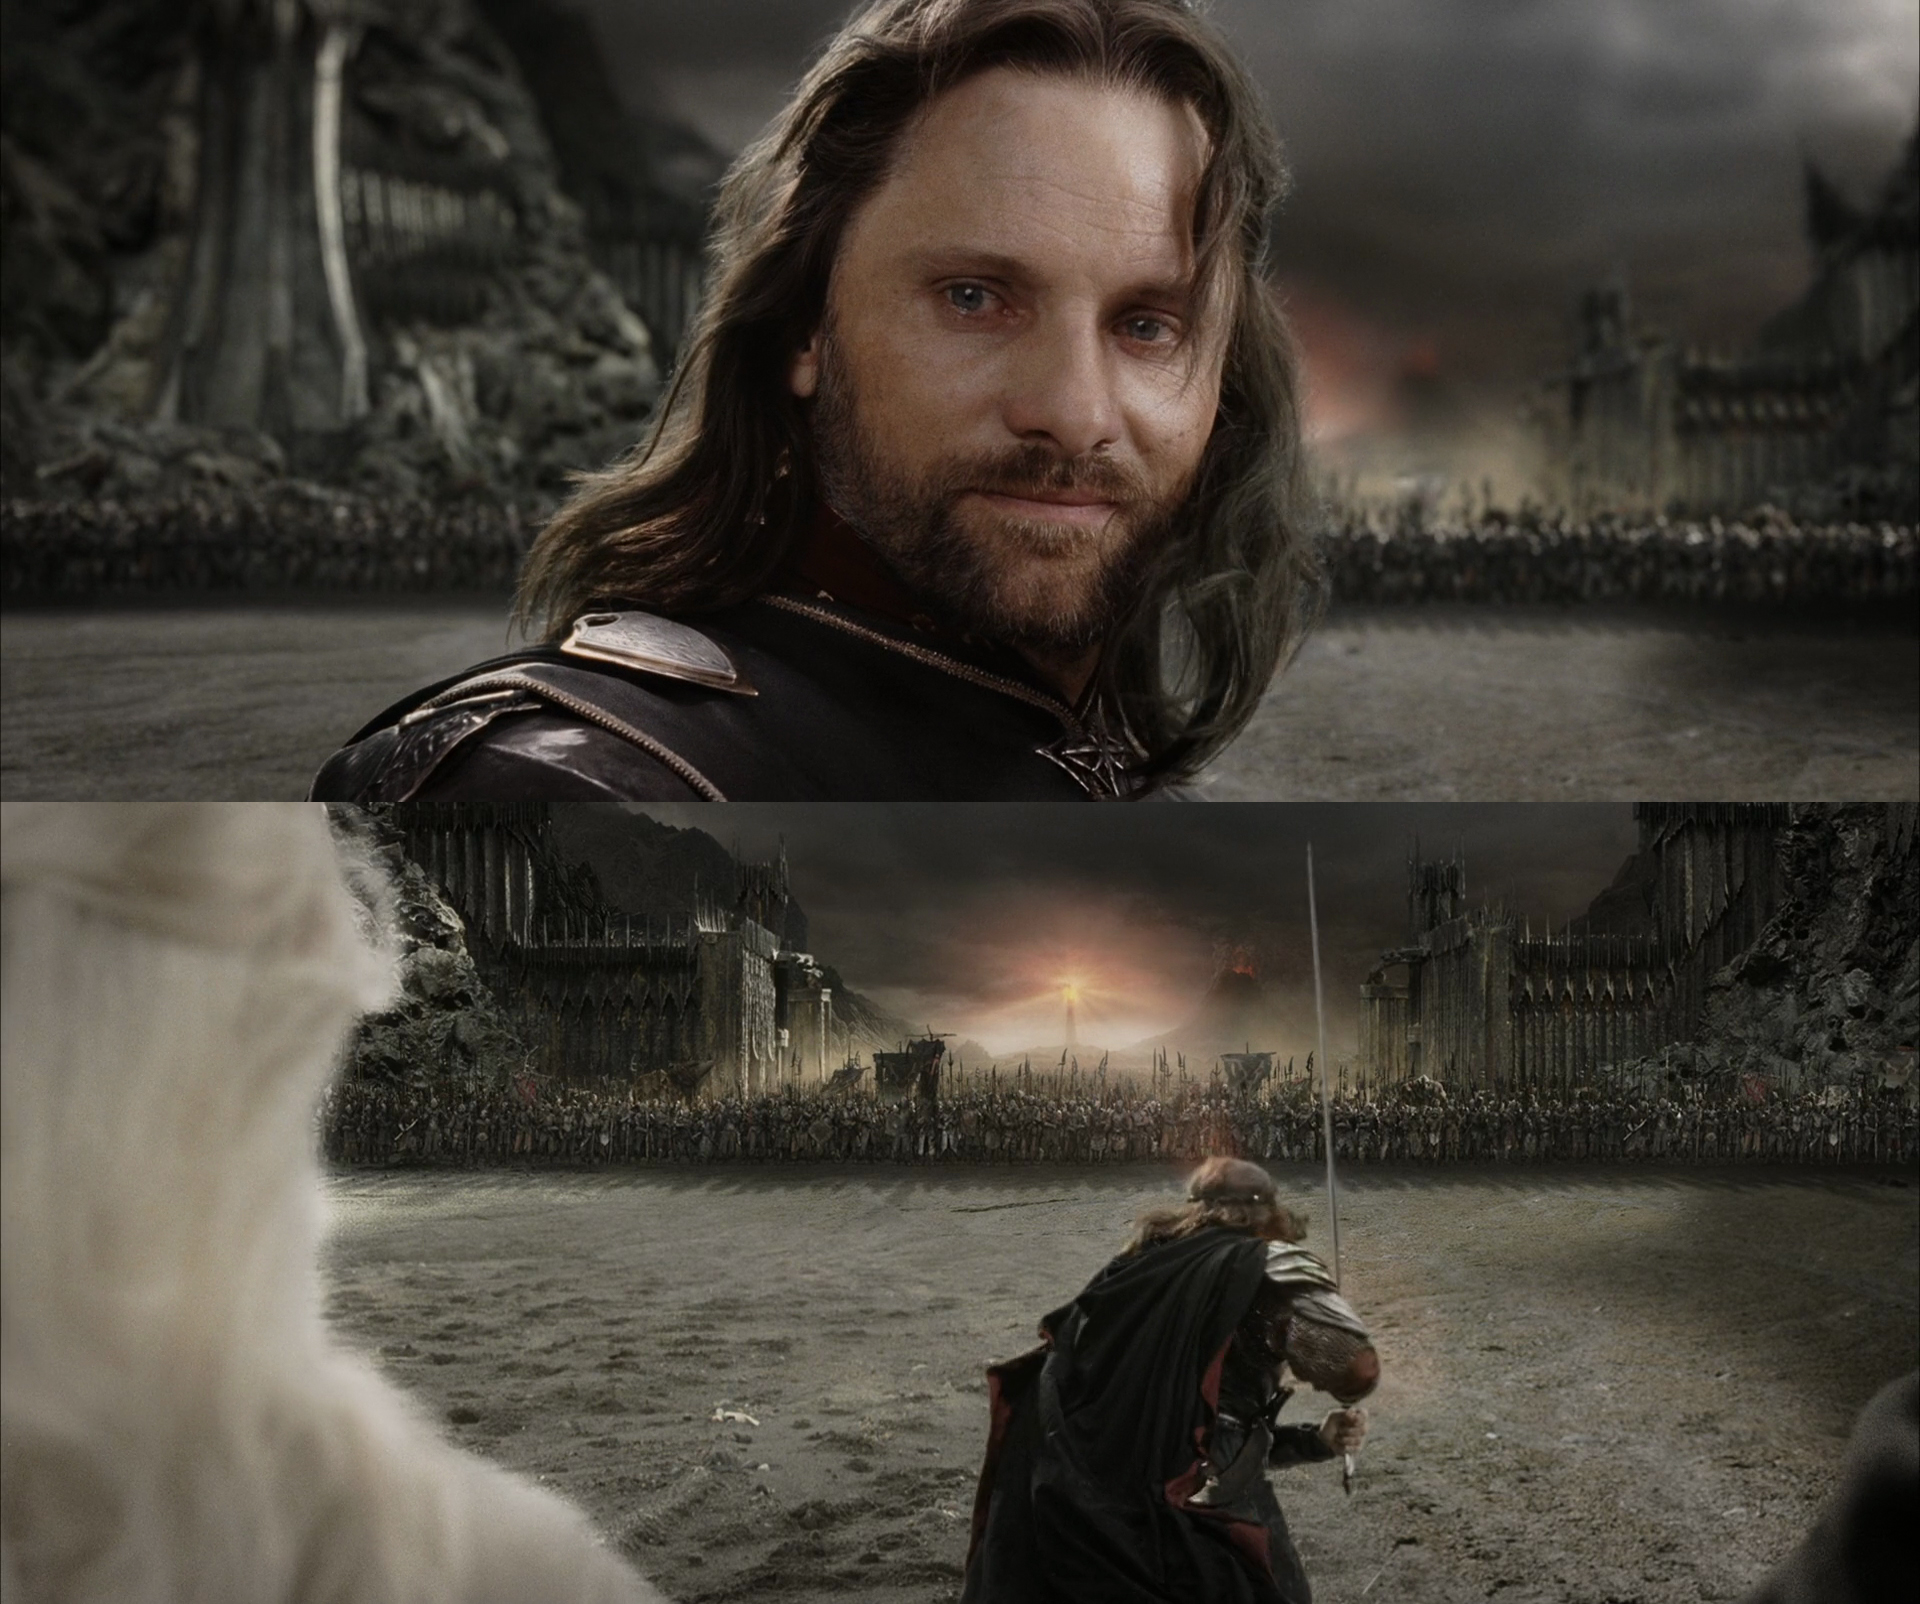 Aragorn Black Gate for Frodo Blank Meme Template. 